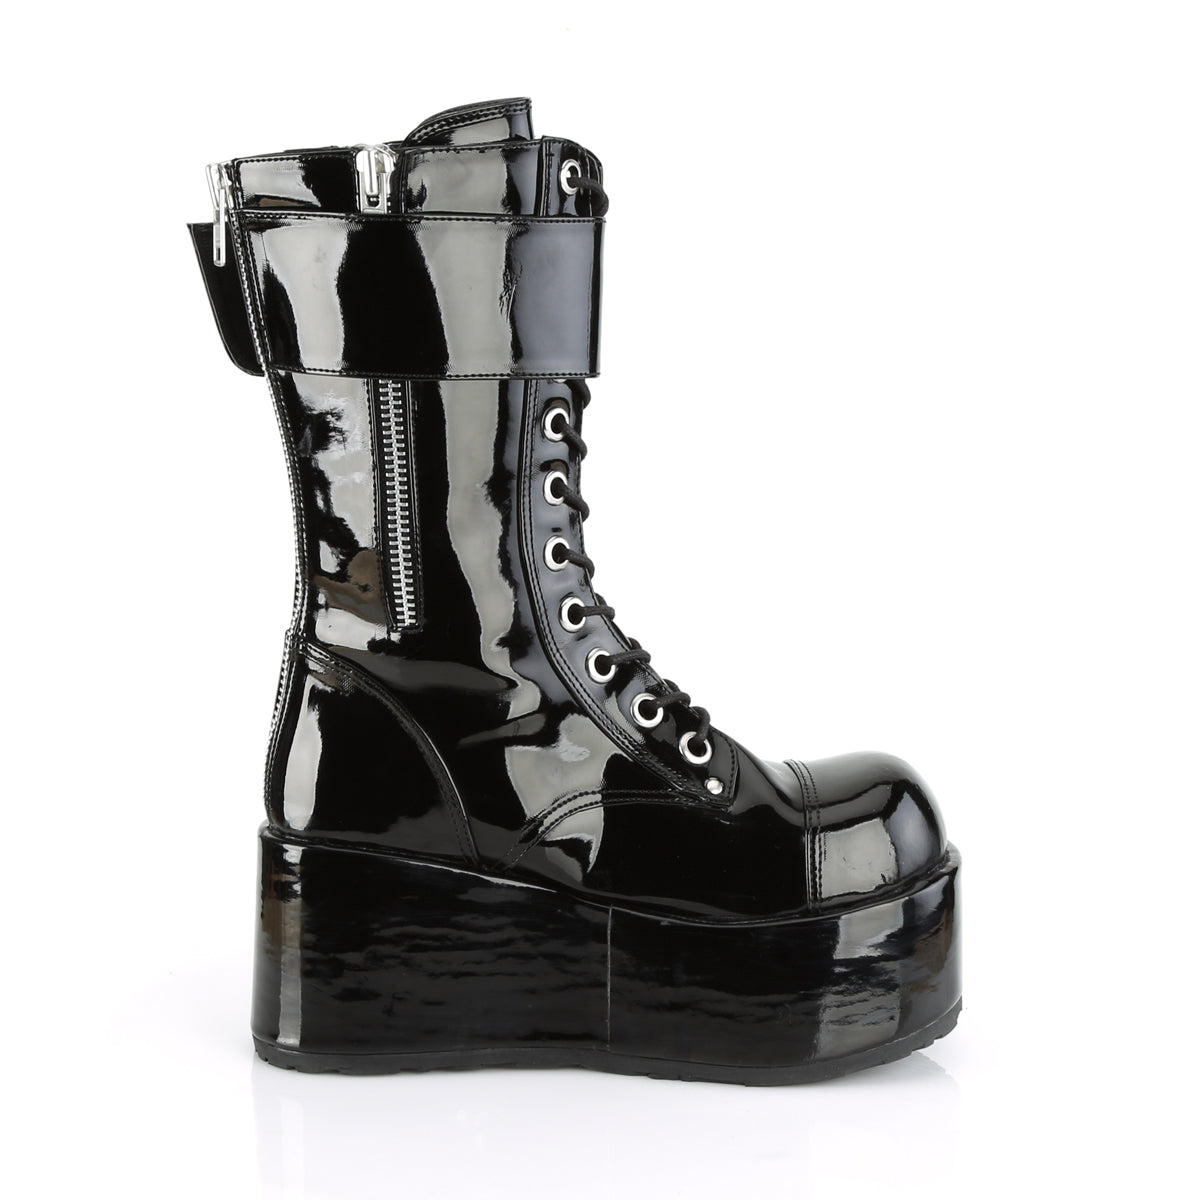 PETROL-150 Black Patent Calf Boot Demonia